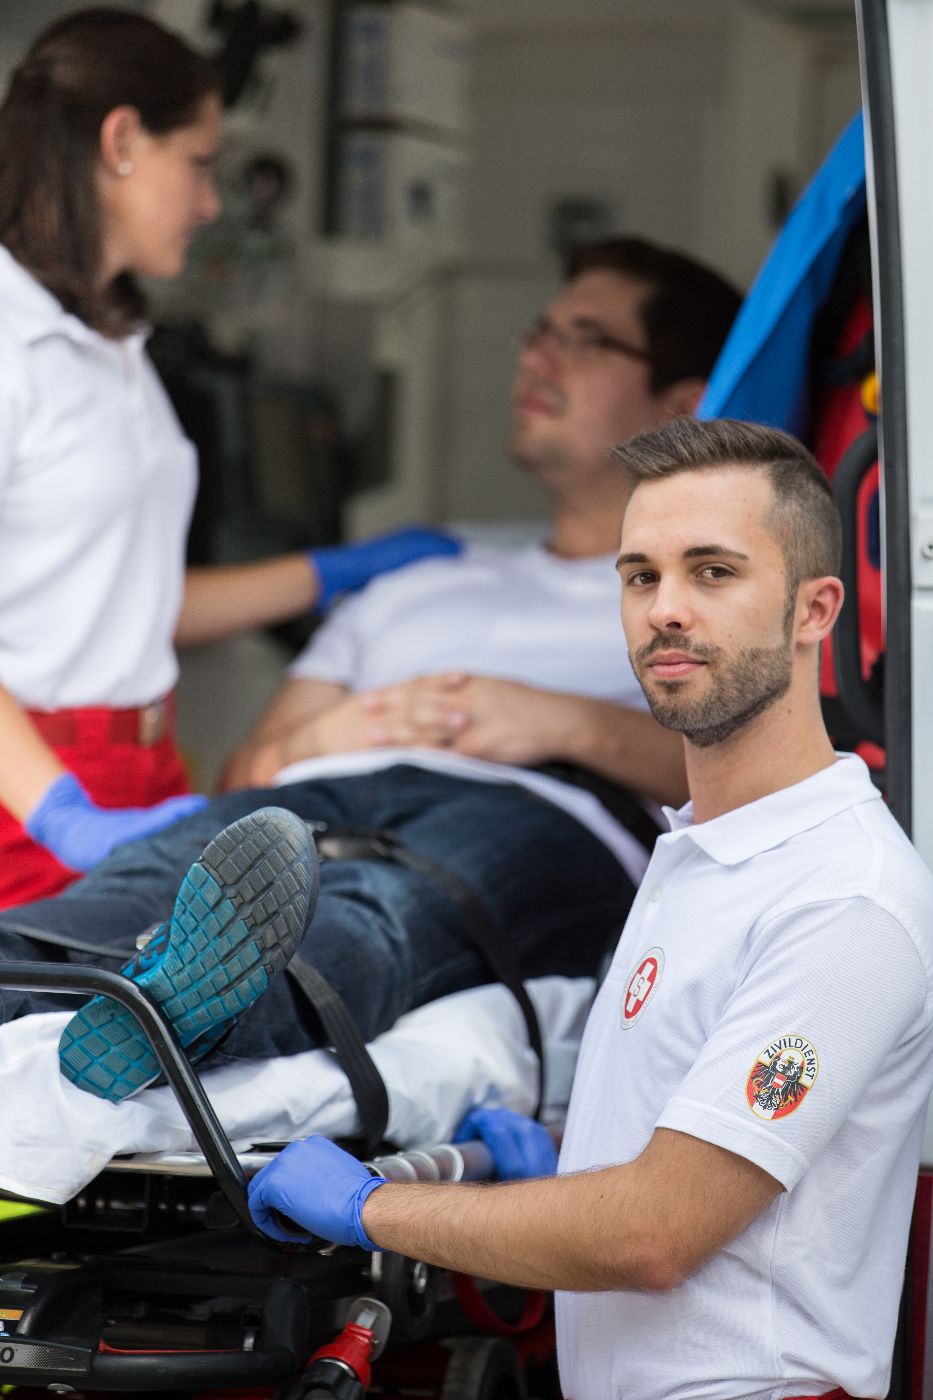 Ein Zivildiener und eine Sanitäterin des Arbeiter-Samariter-Bundes Österreichs betreuen eine Person in einem Krankenwagen